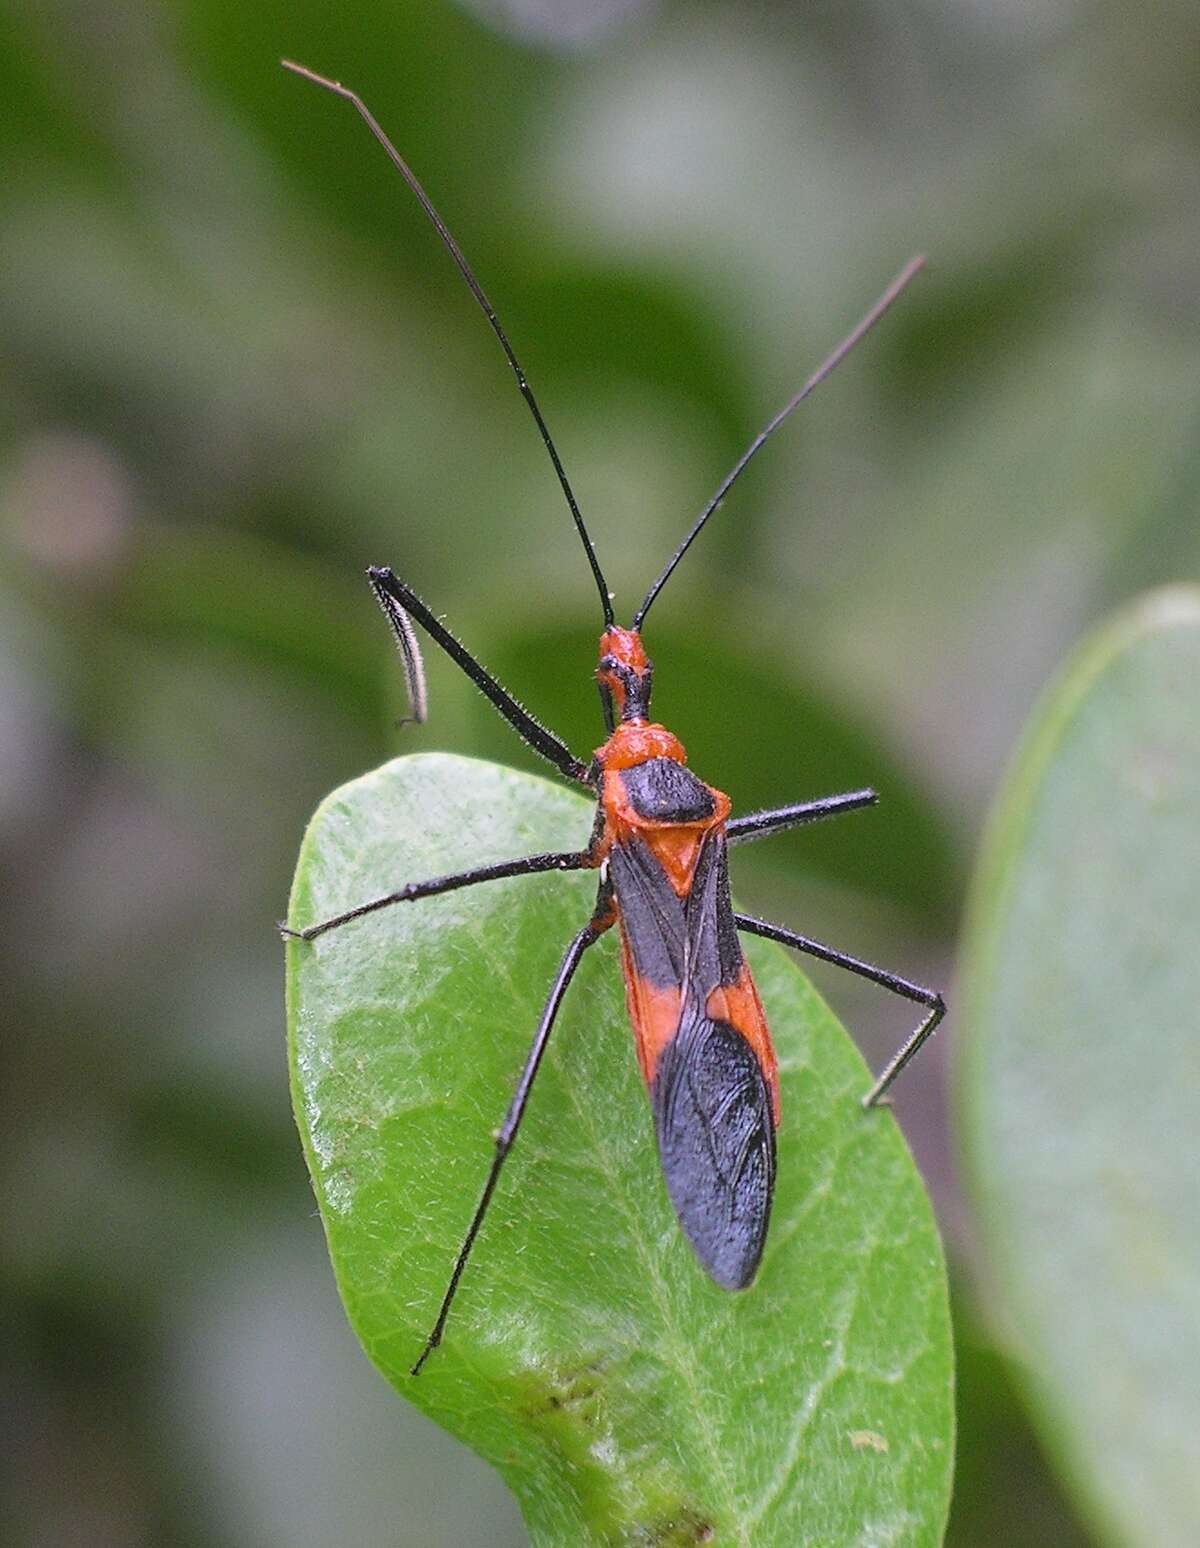 Adult assassin bug, Zelus longipes